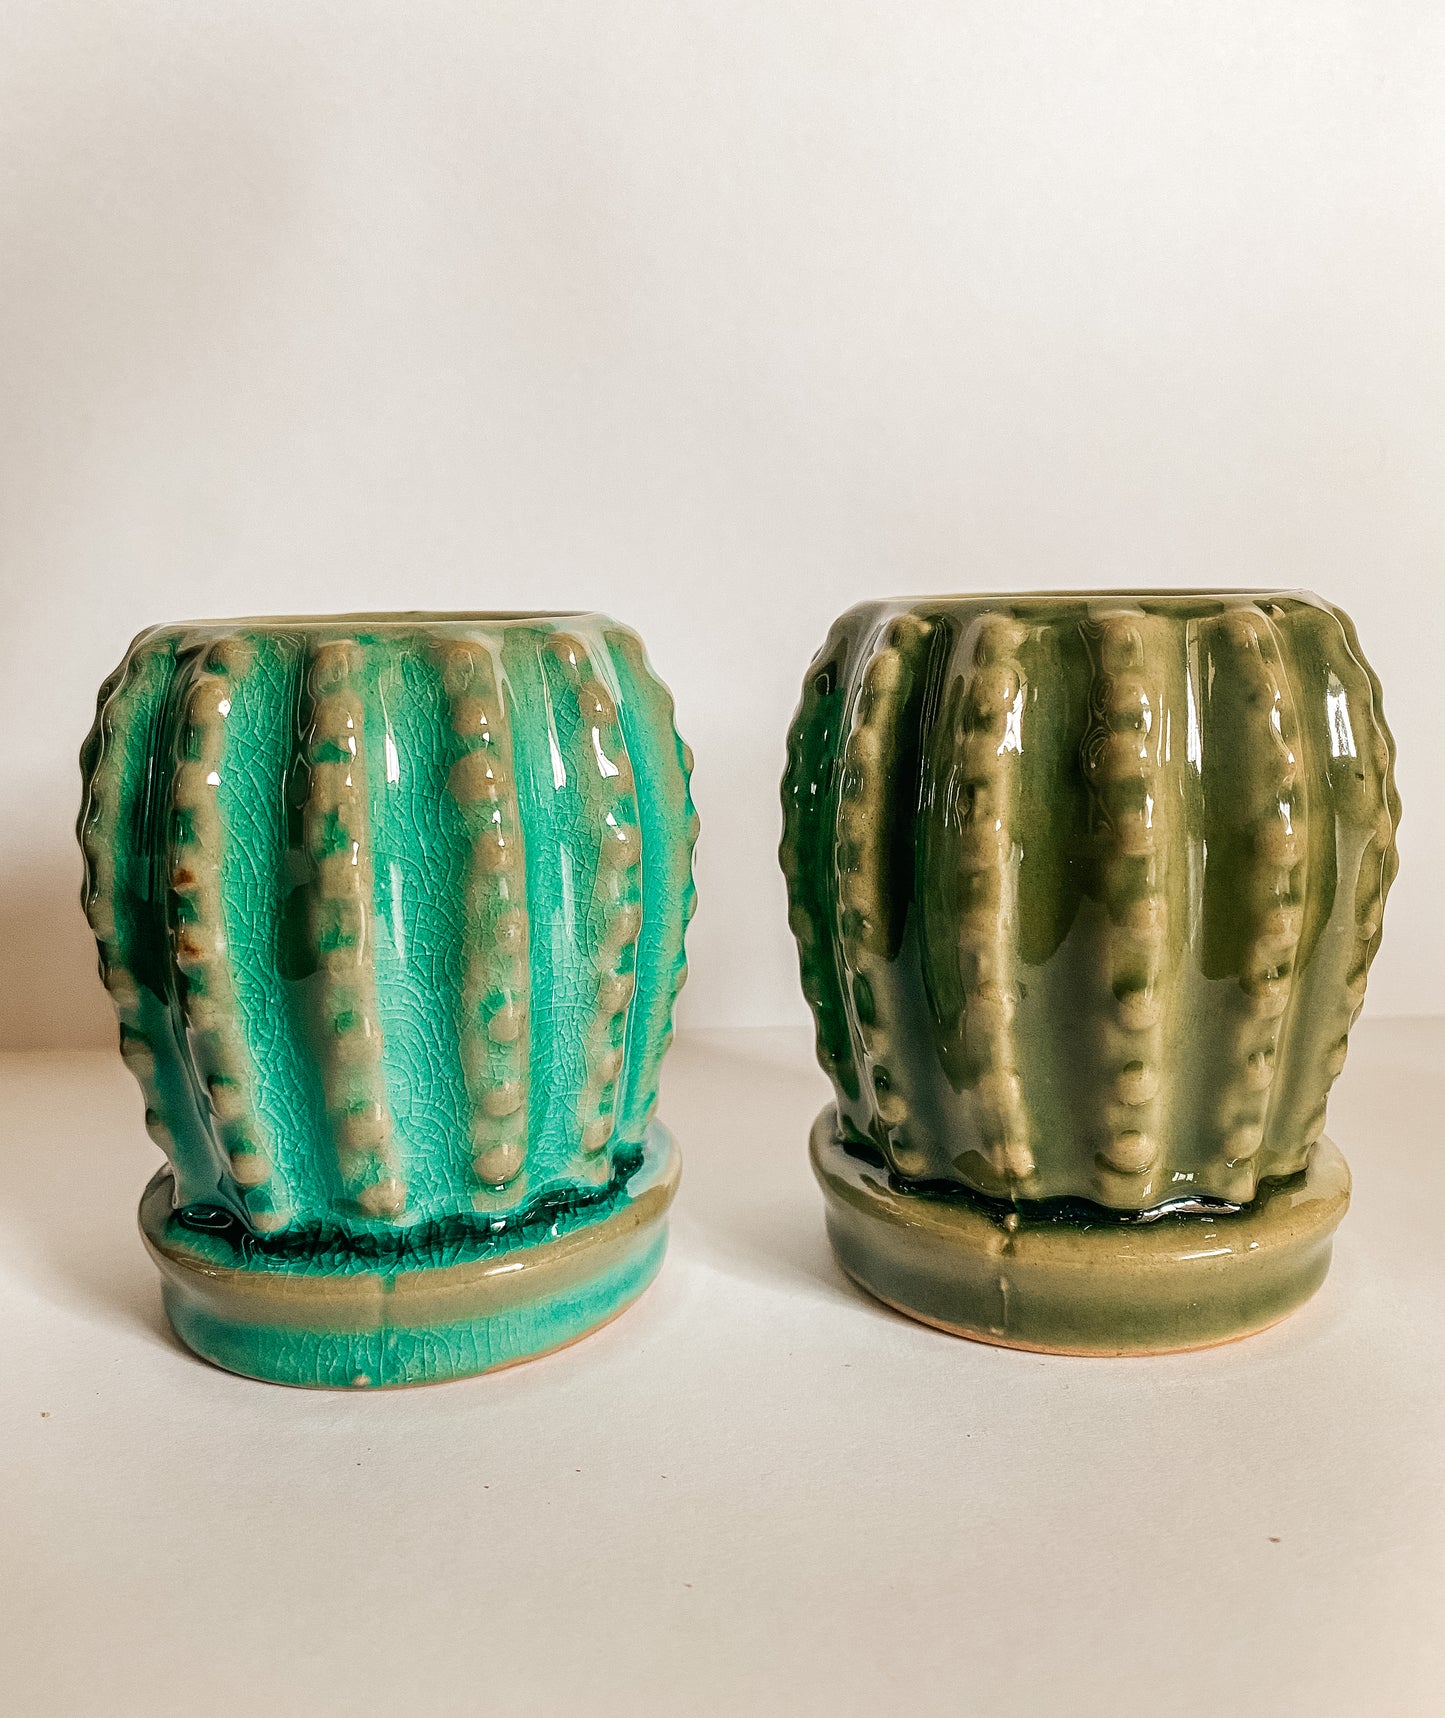 Mini cactus burner